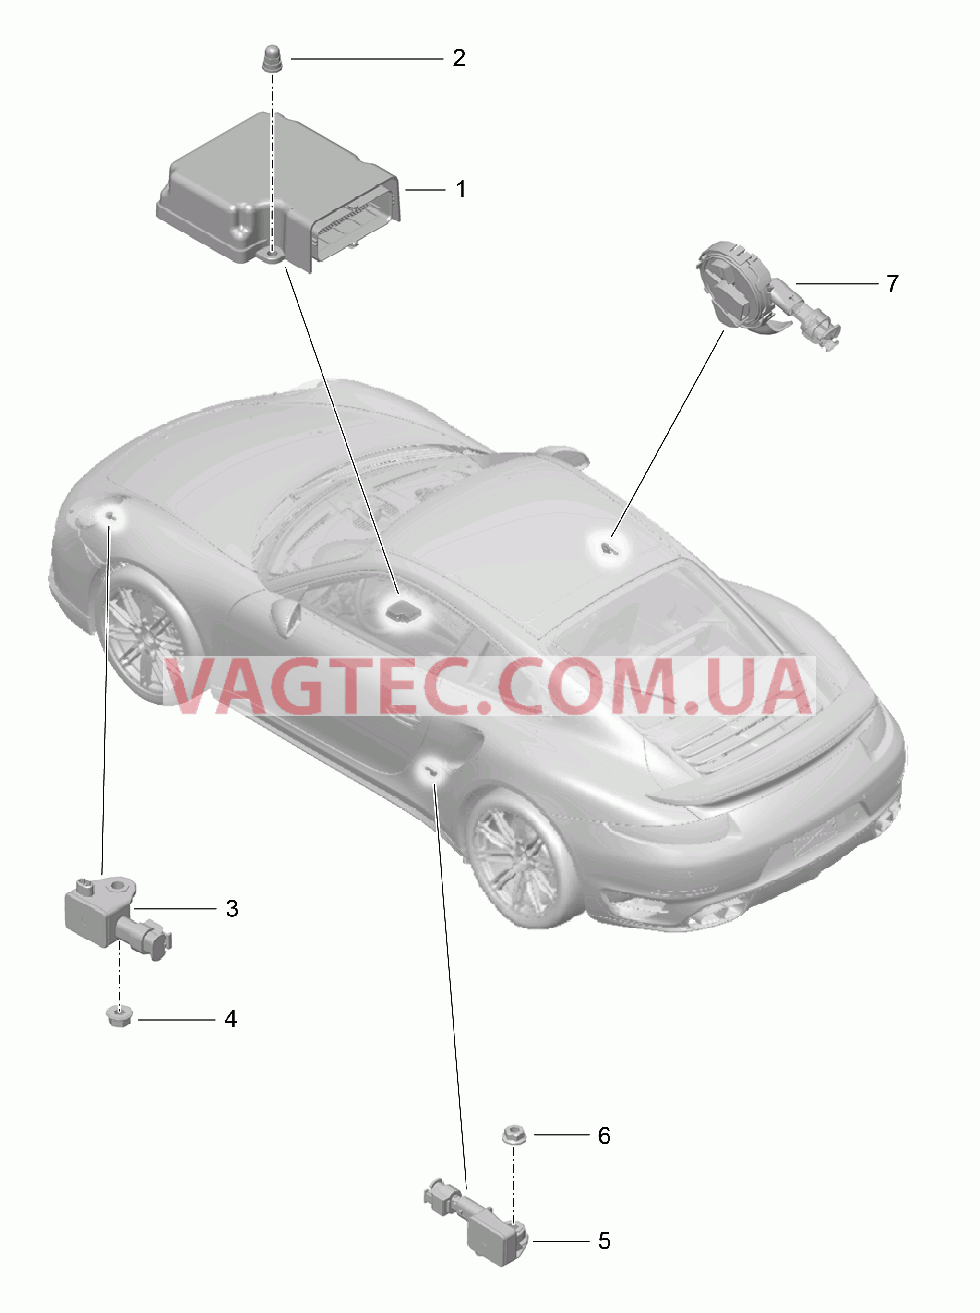 901-005 Блок управления, Датчик, Подушка безопасности для PORSCHE Porsche991Turbo 2014-2017USA